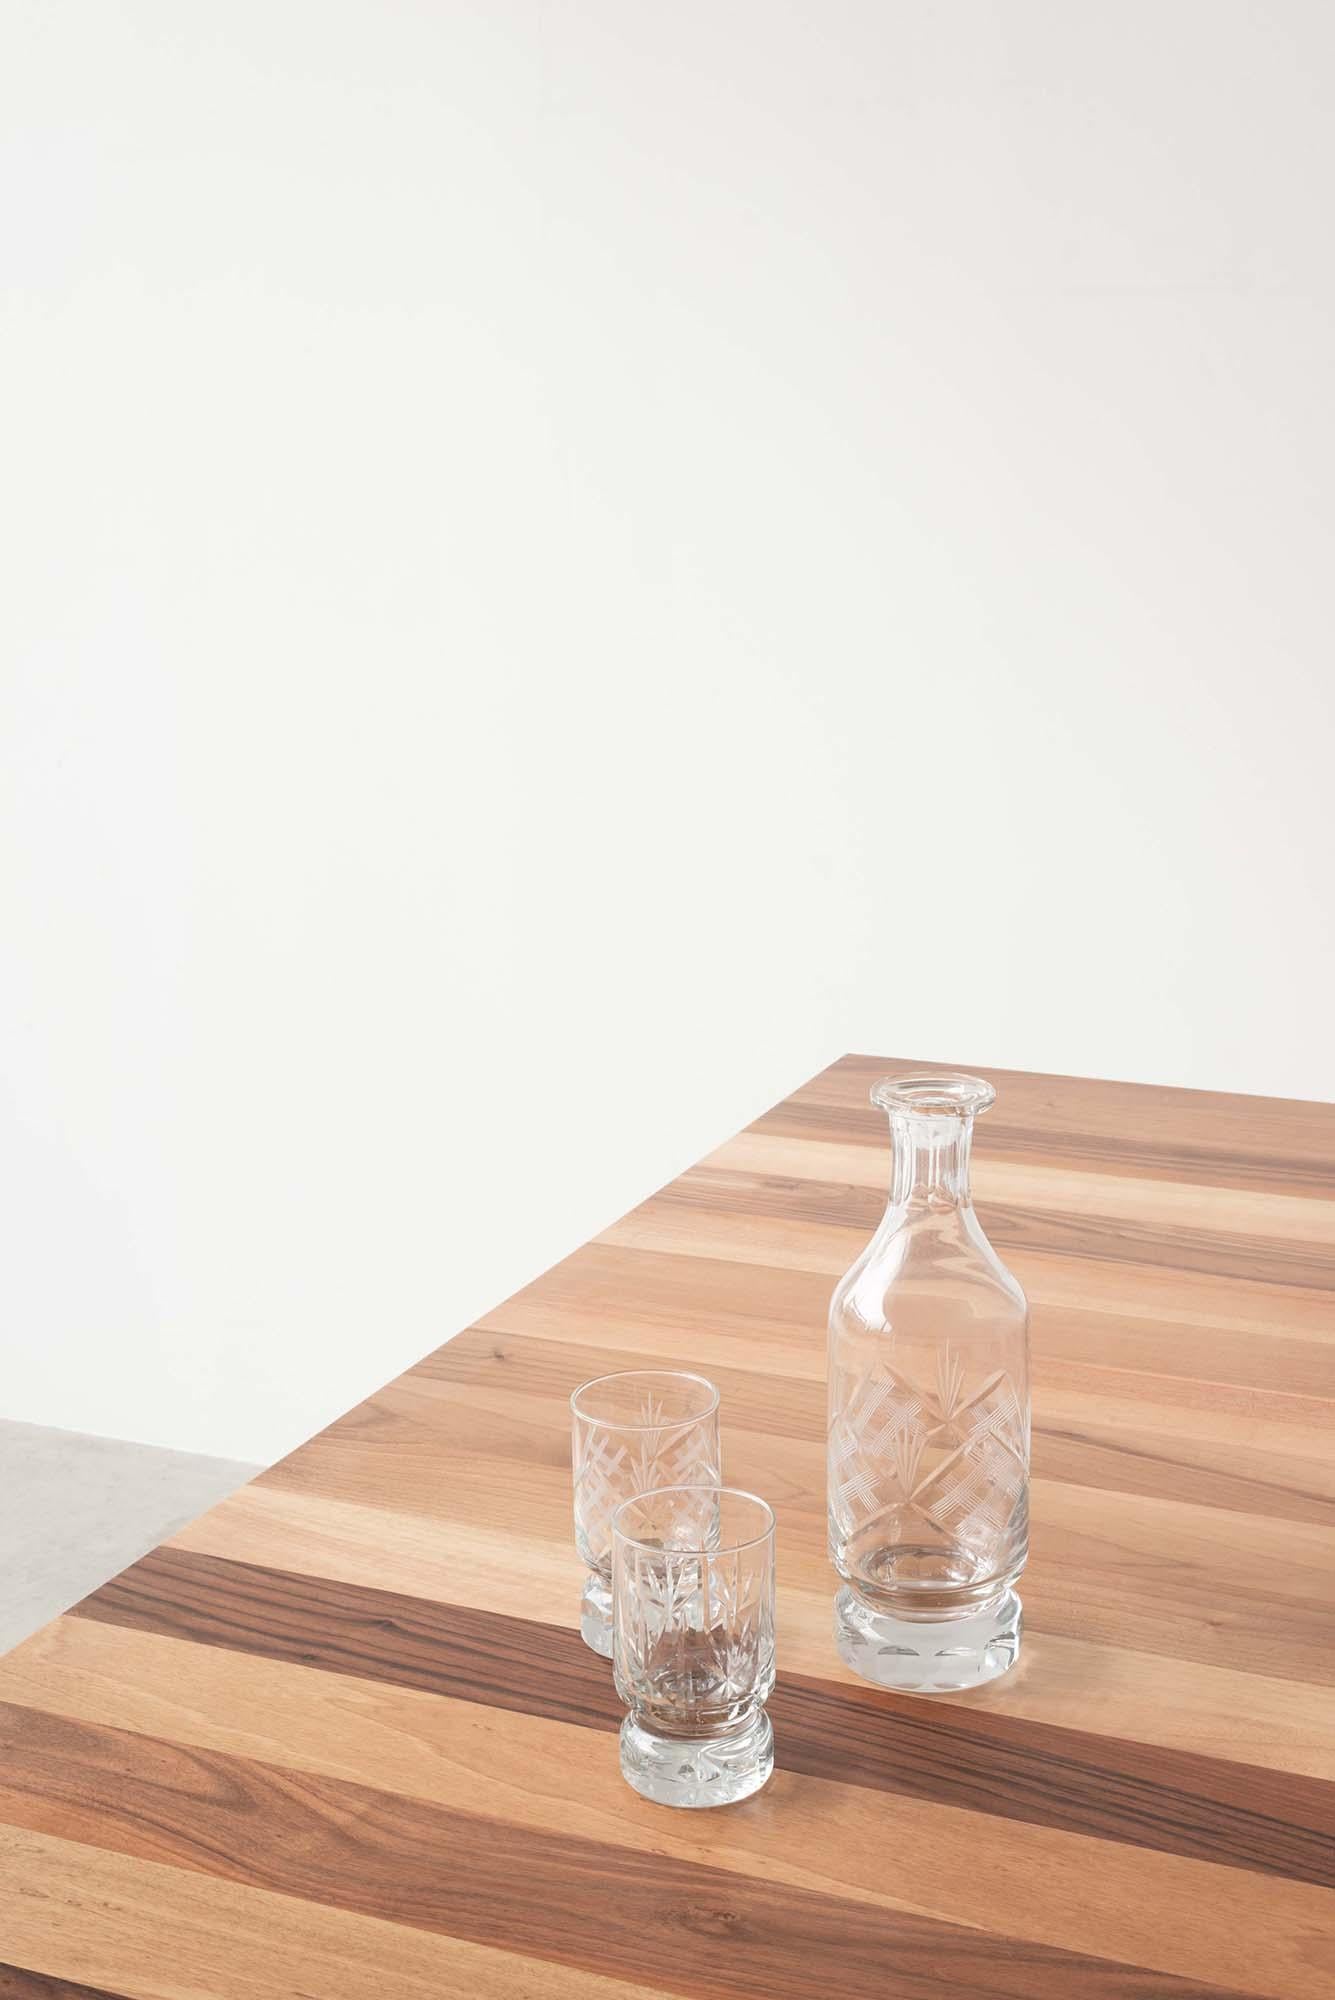 Quatre fins pieds en métal peint soutiennent un solide plateau en noyer européen.
De forme carrée, la table conserve un design simple avec une ligne naïve et rigoureuse.

Concepteur : Roberto Cicchinè.
 